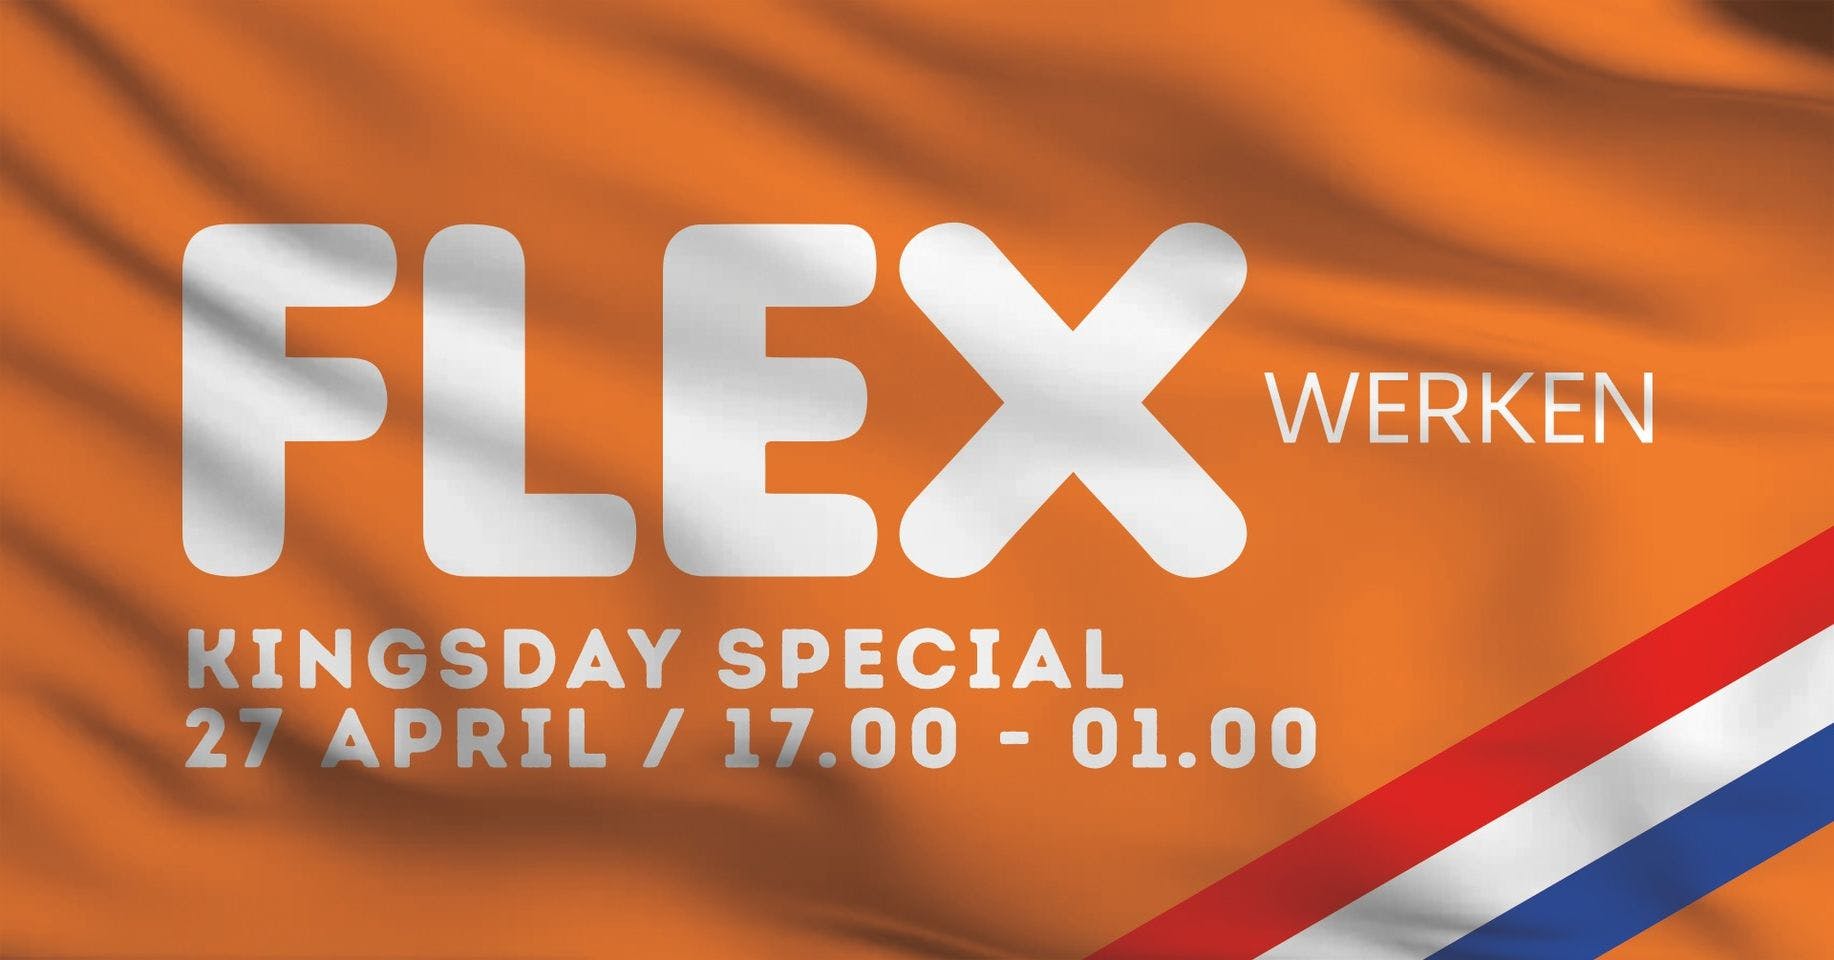 FLEX Werken Kingsday Special